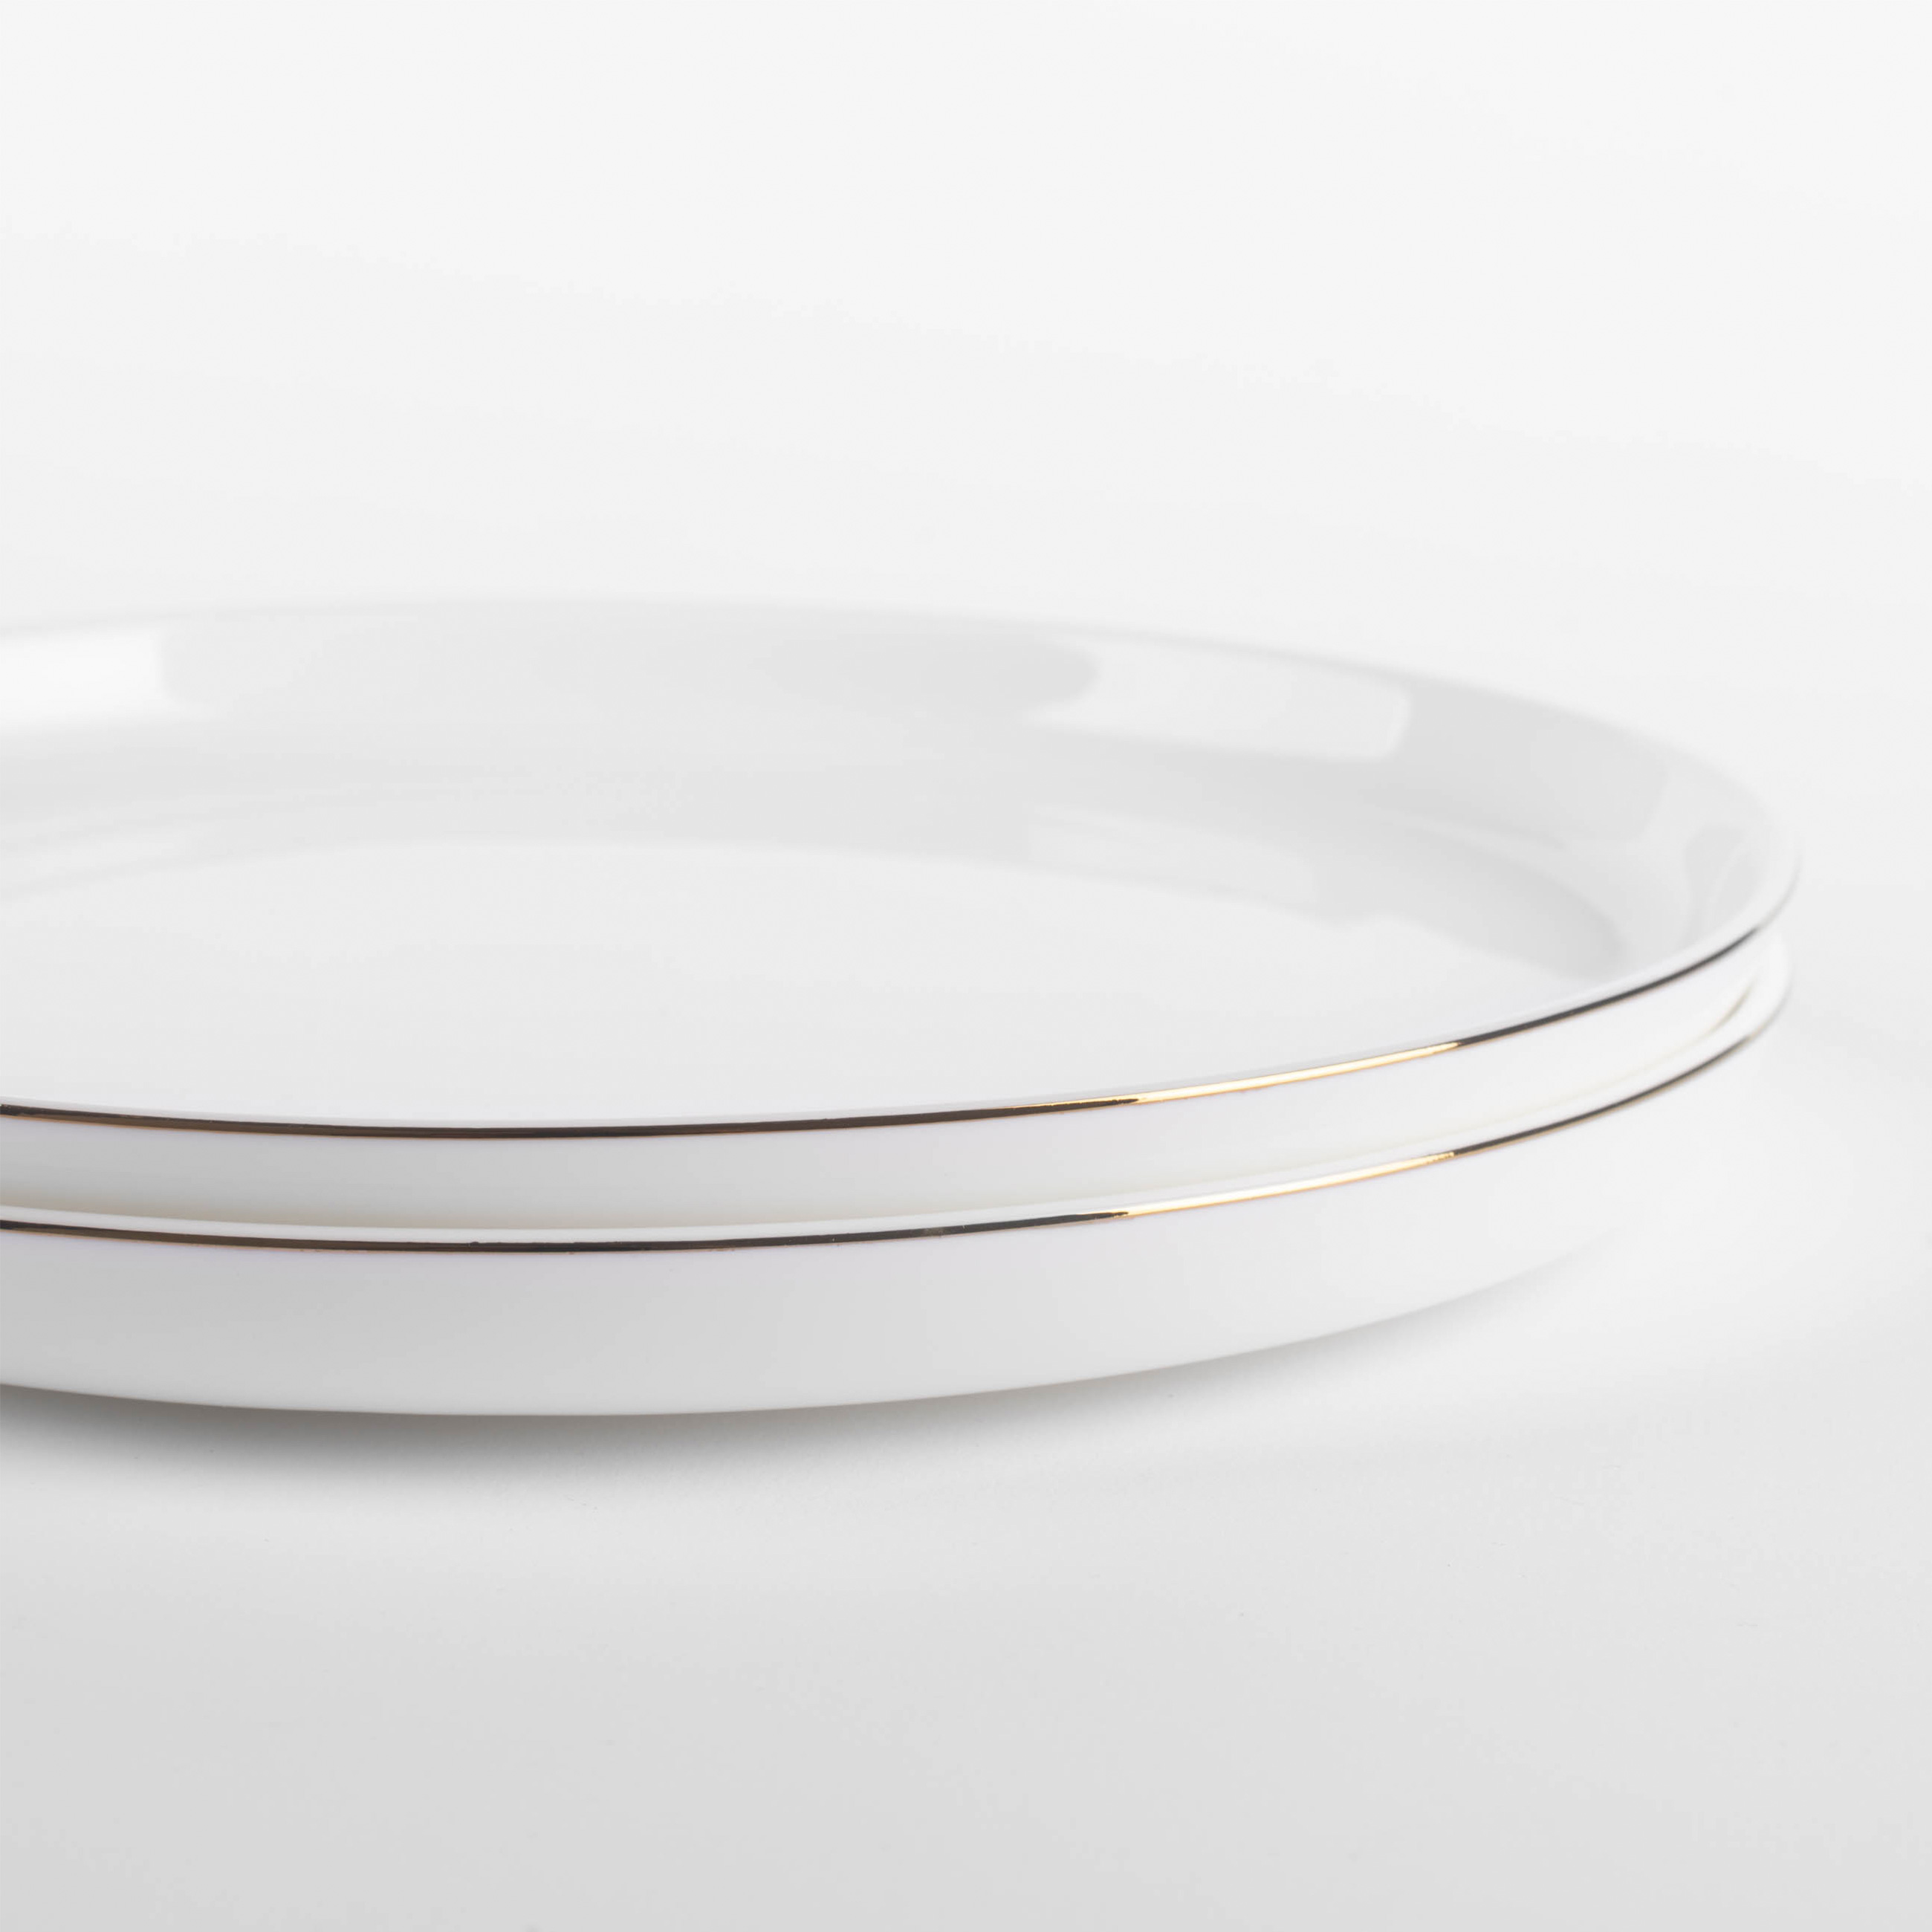 Тарелка десертная, 20 см, 2 шт, фарфор F, белая, Ideal gold изображение № 2